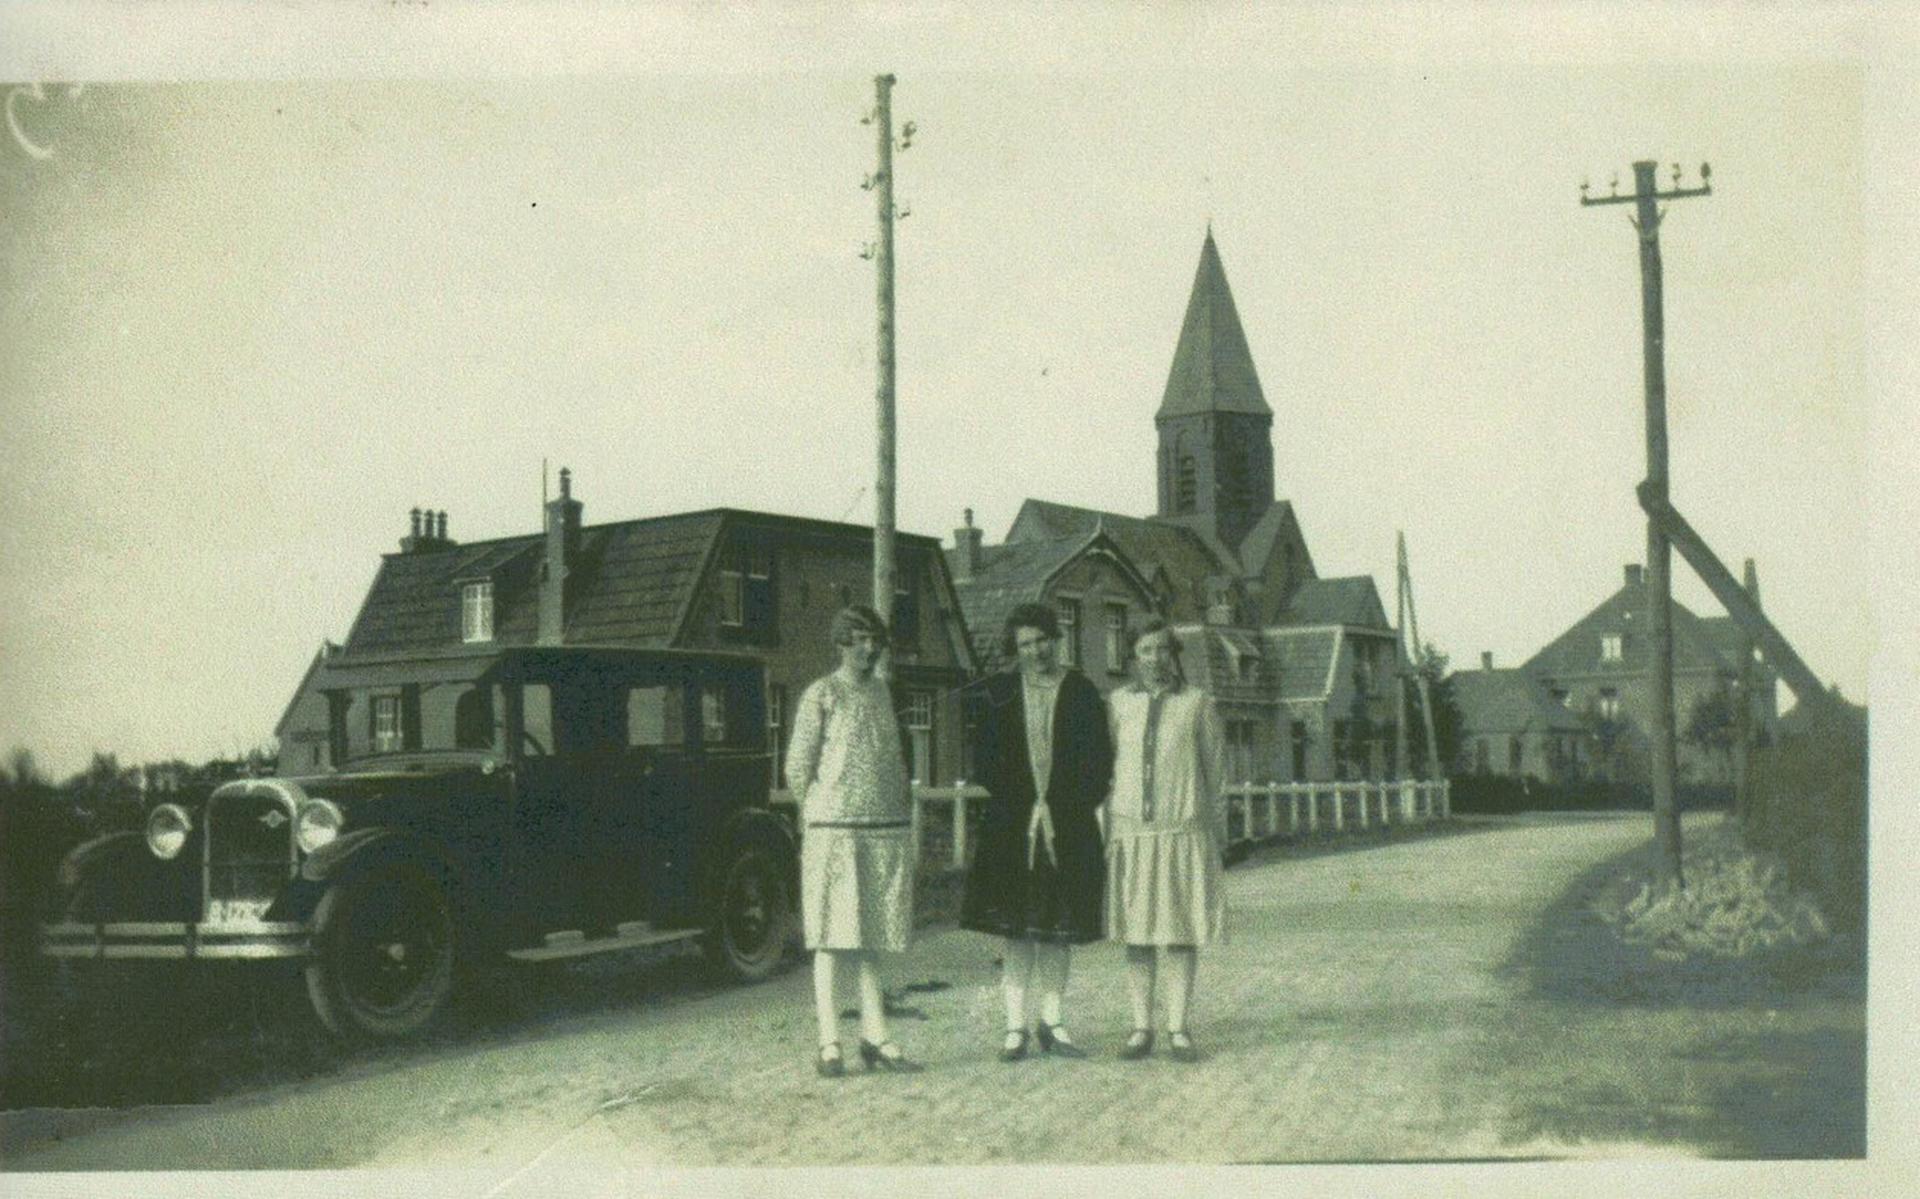 Tijdens de Sneupersmiddag in Steggerda is ook deze historische foto  te zien van drie  dames bij de R.K. kerk naast een prachtige auto uit vroeger jaren, met het bekende B-nummerbord